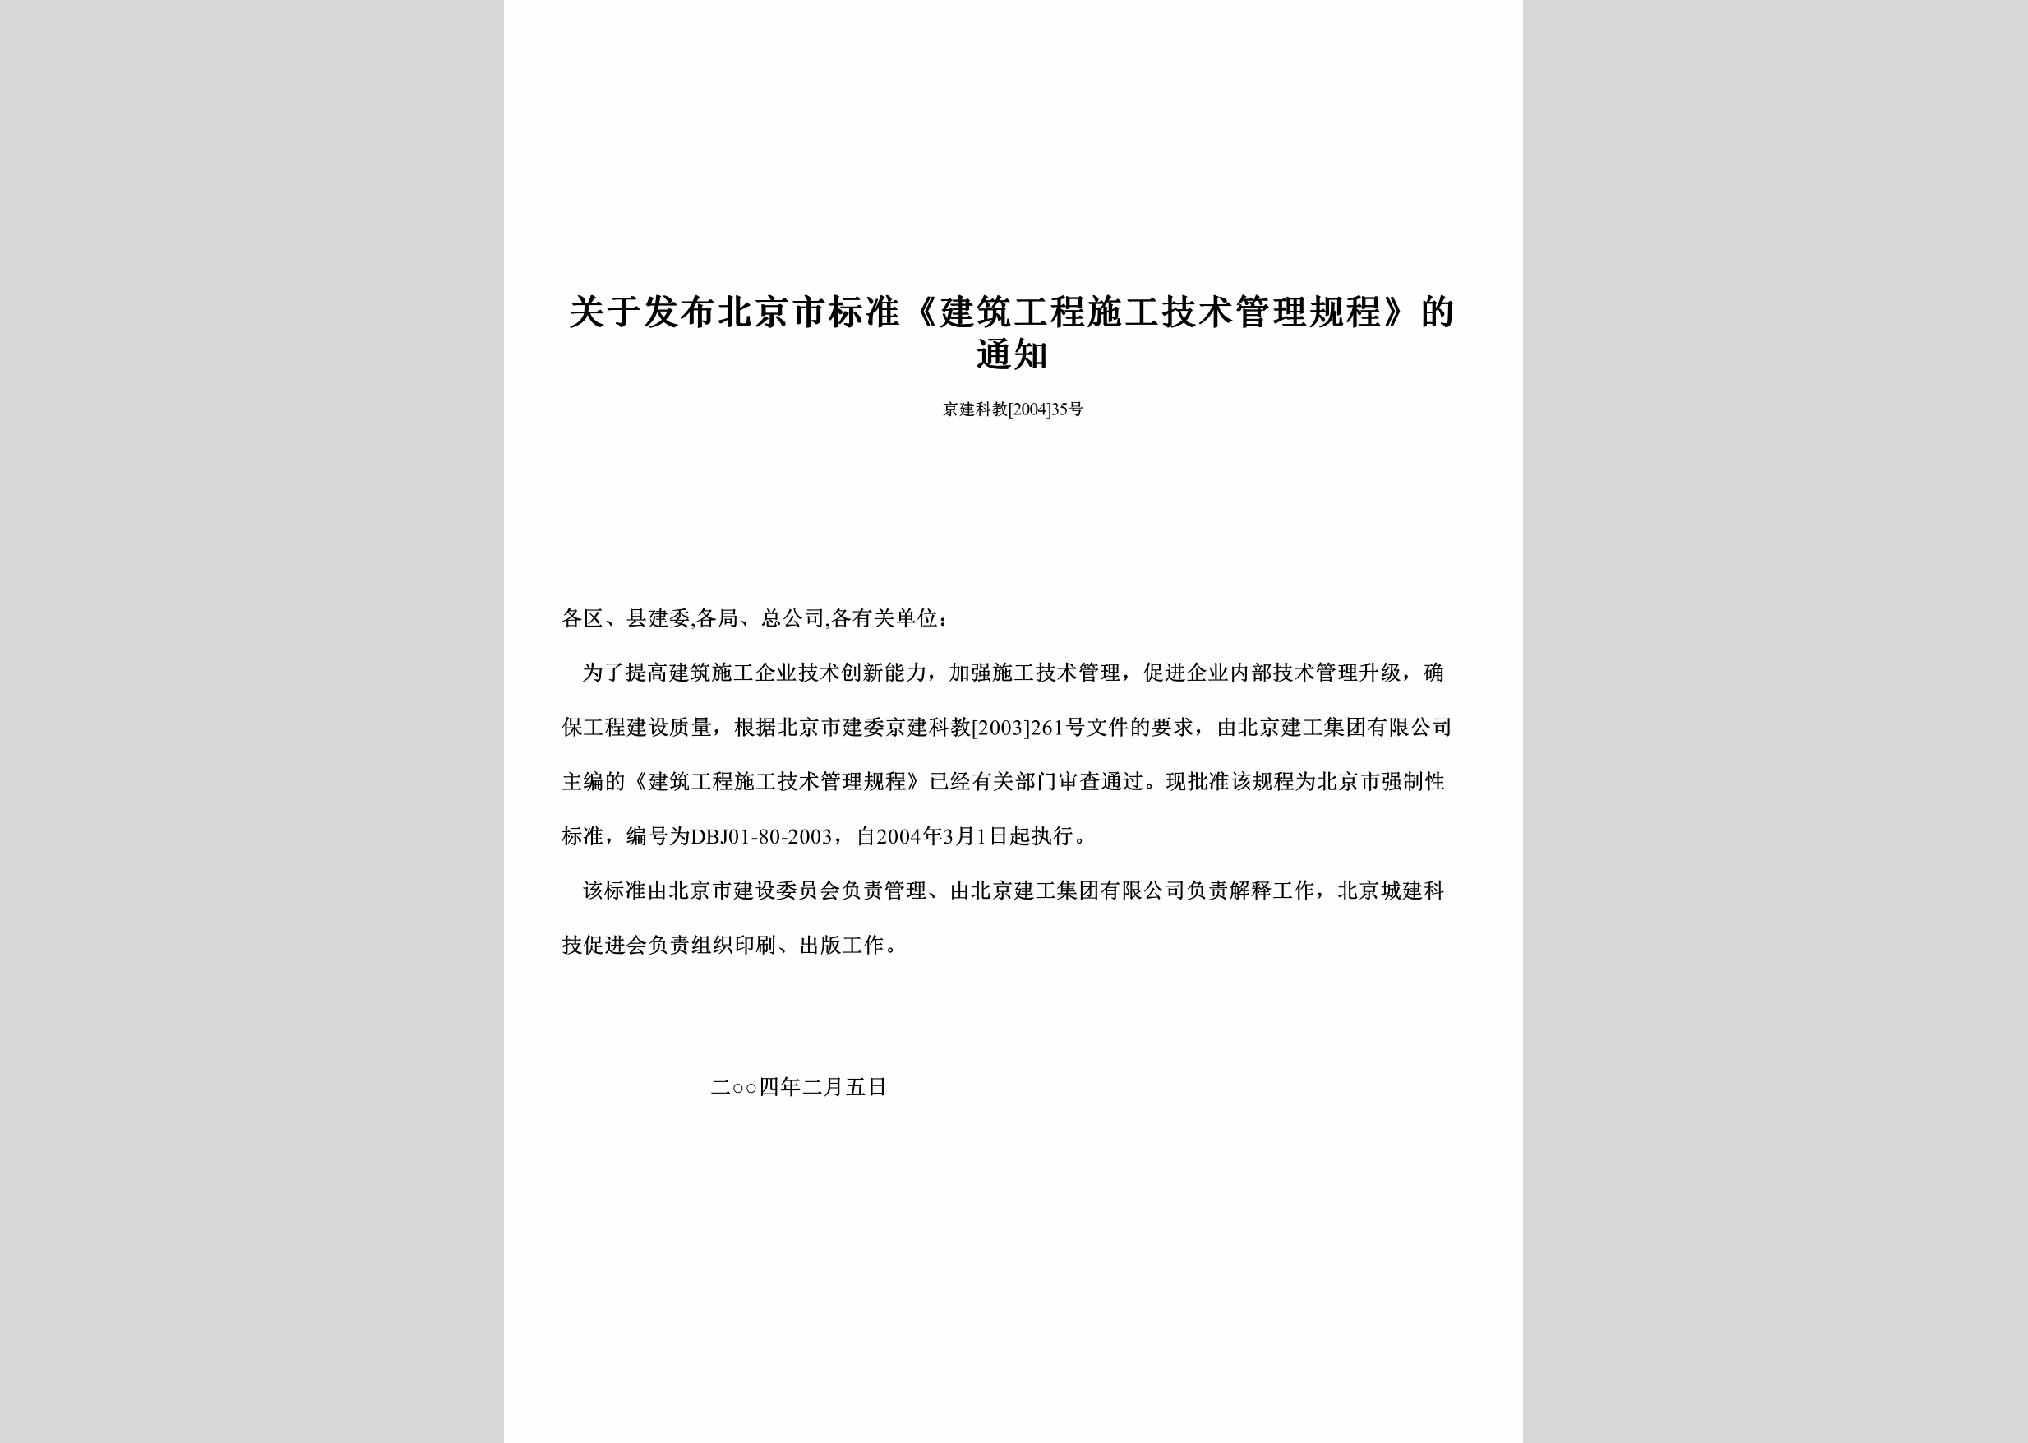 京建科教[2004]35号：关于发布北京市标准《建筑工程施工技术管理规程》的通知